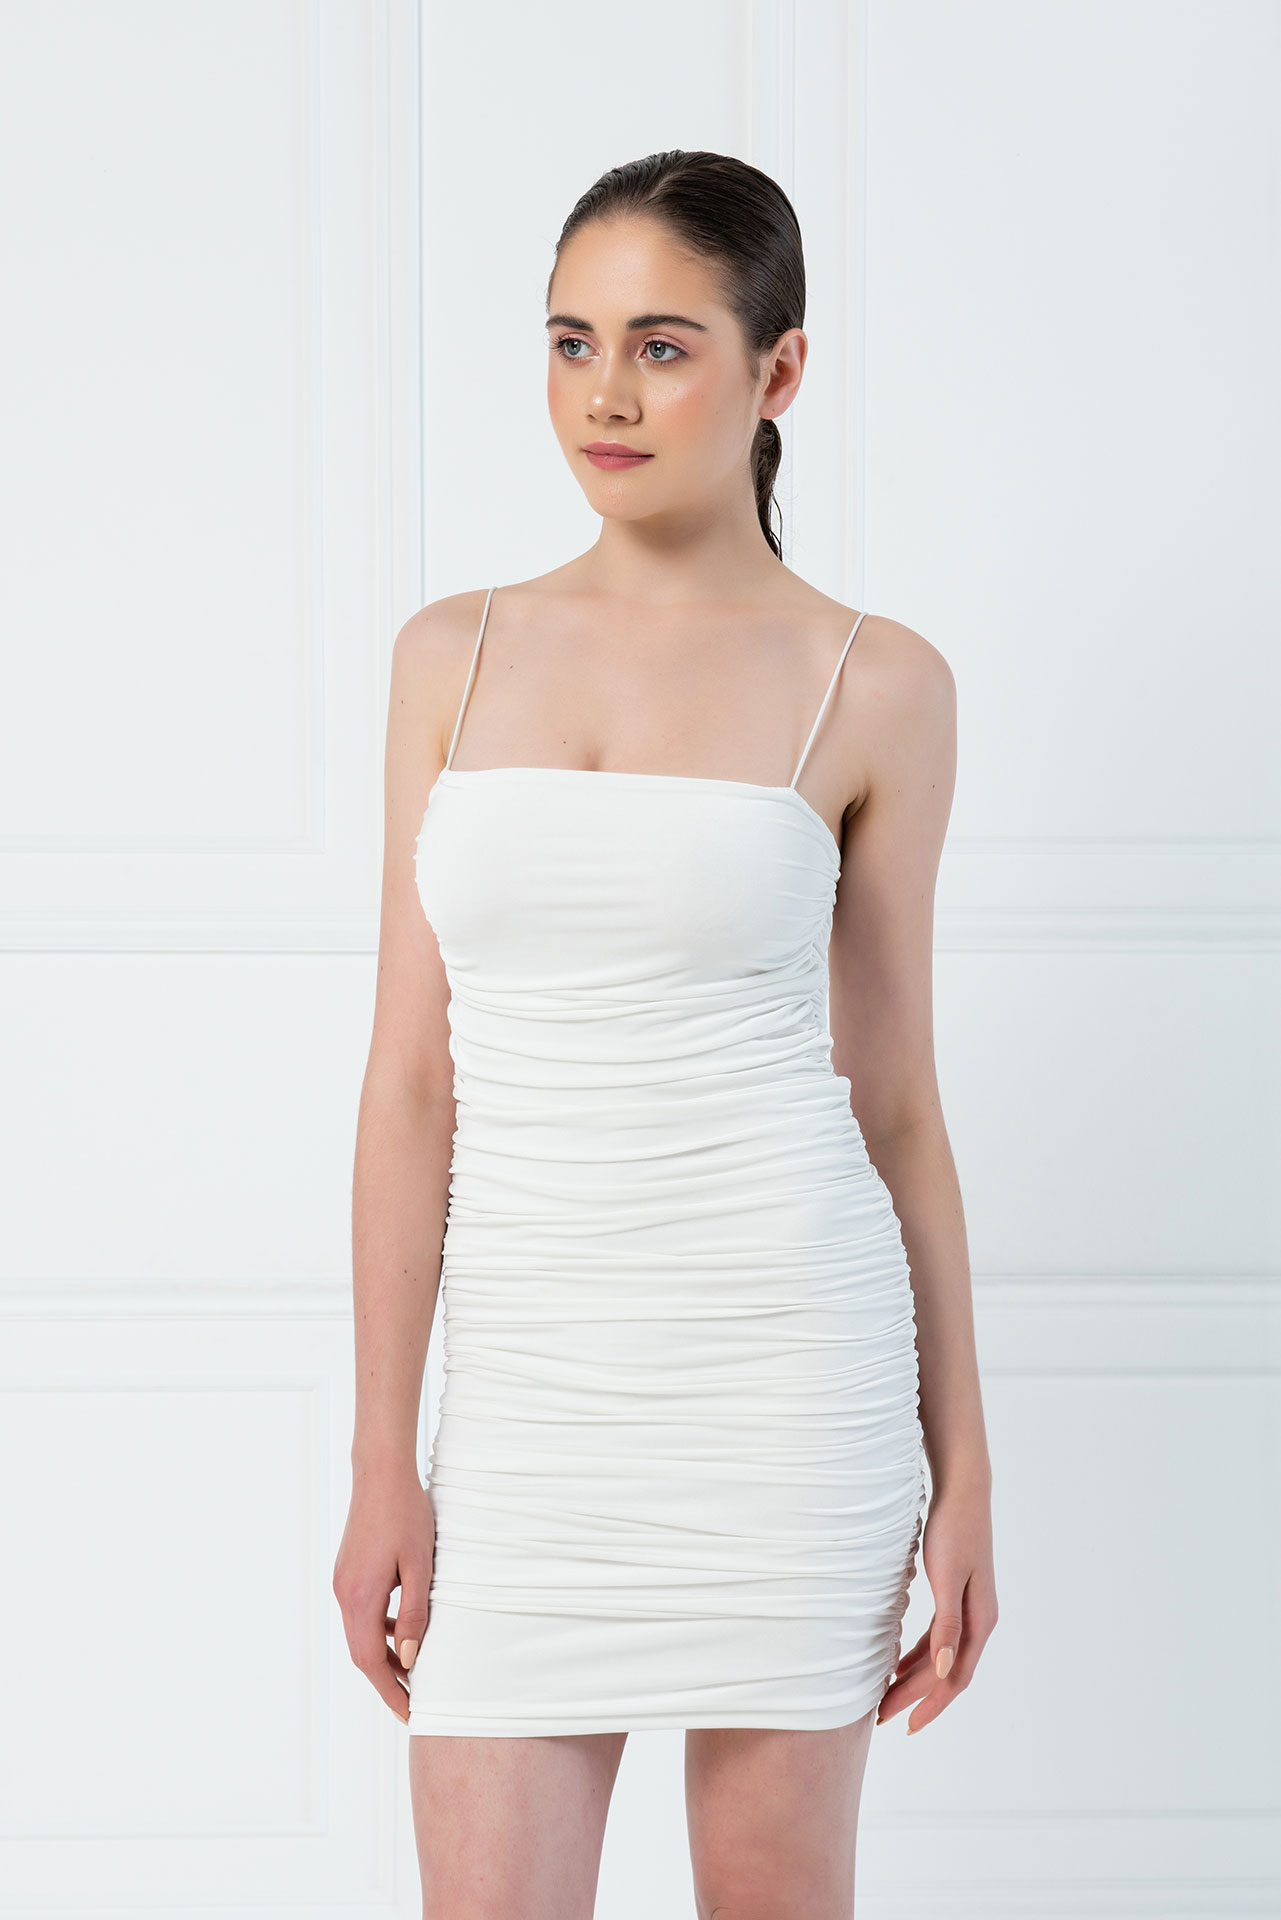 Toptan Vücudu Saran Büzgülü Off white Askılı Mini Elbise